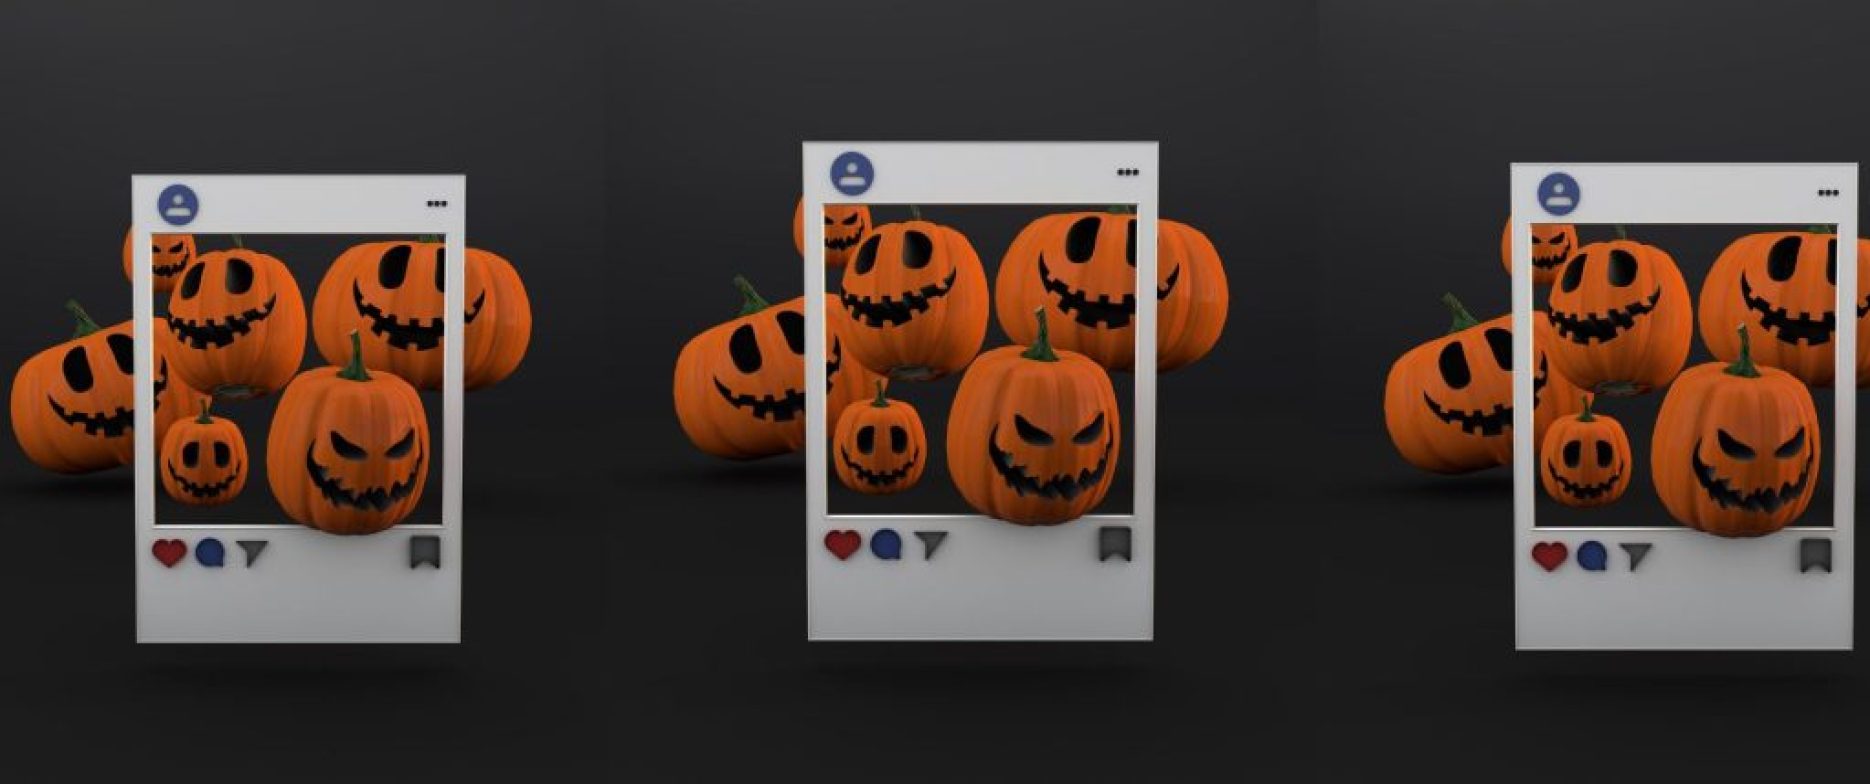 Ideas Creativas de Contenidos para Instagram en Halloween